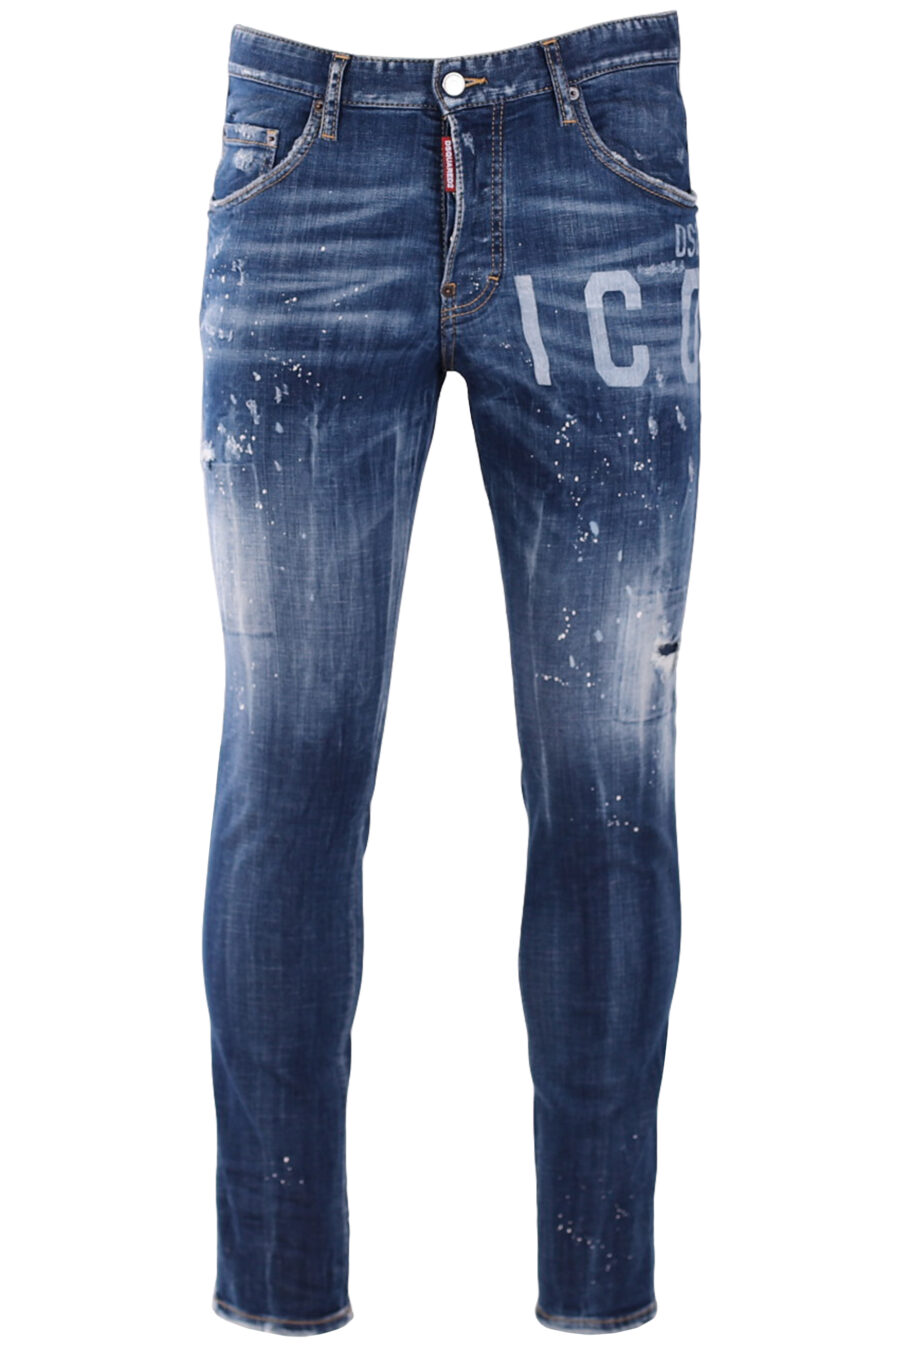 Pantalón vaquero azul "skater jean" con logo "icon" y pintura blanca - IMG 9461